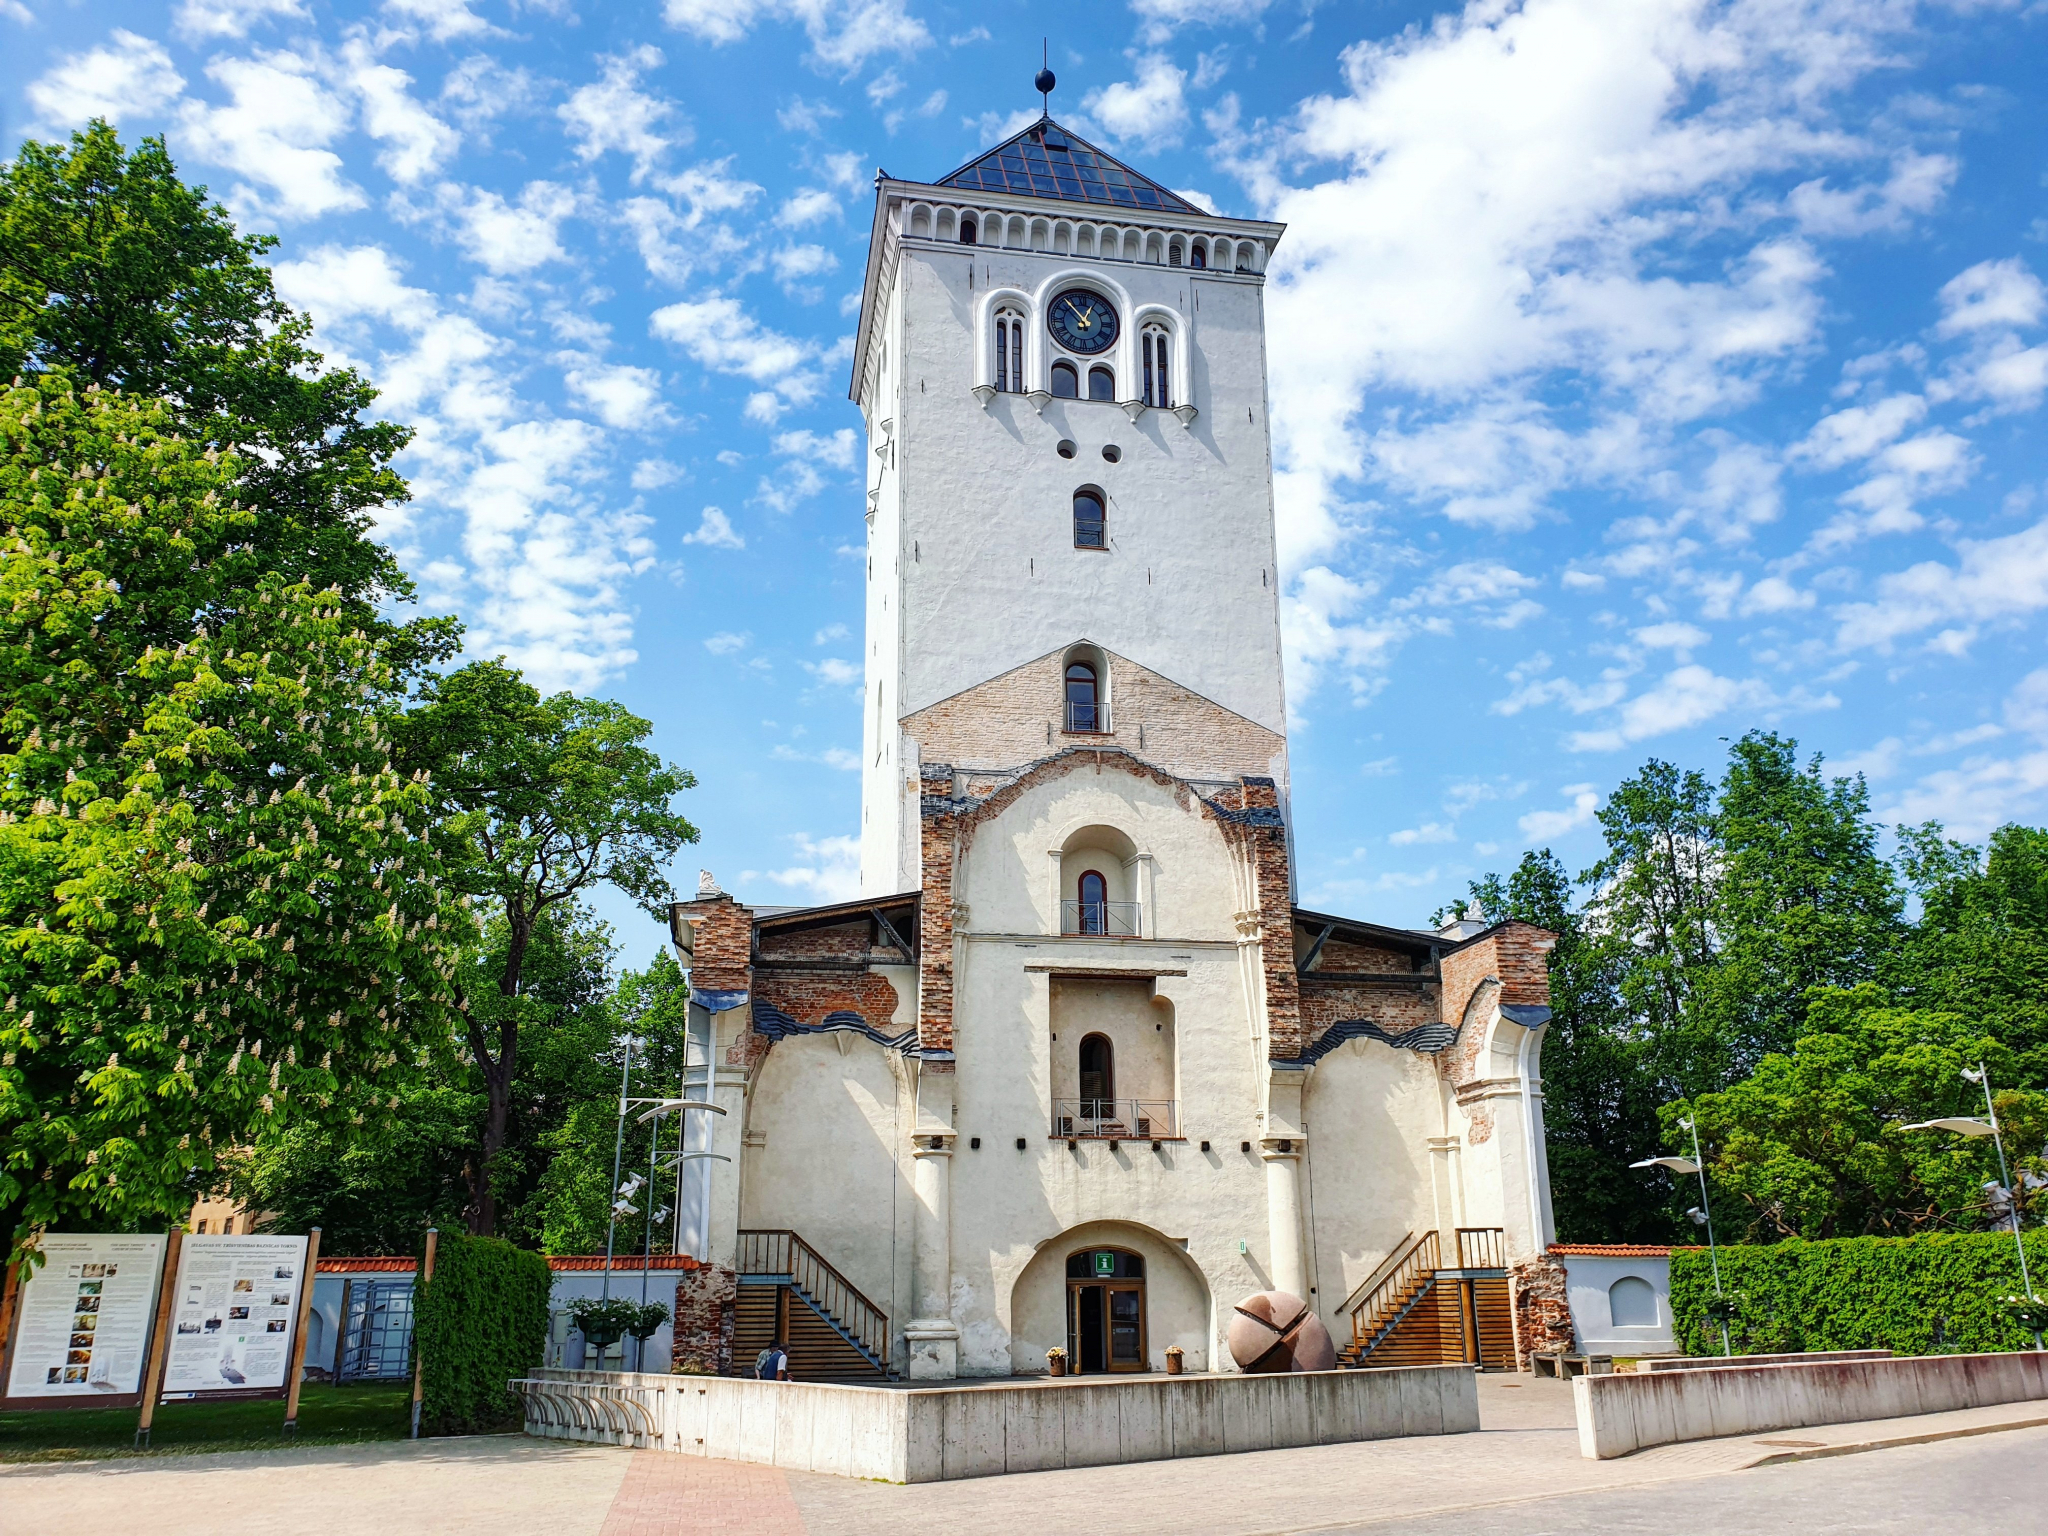 Publicētas Pauļa Rēveļa atmiņas par Jelgavas Sv.Trīsvienības baznīcas torņa atjaunošanu 